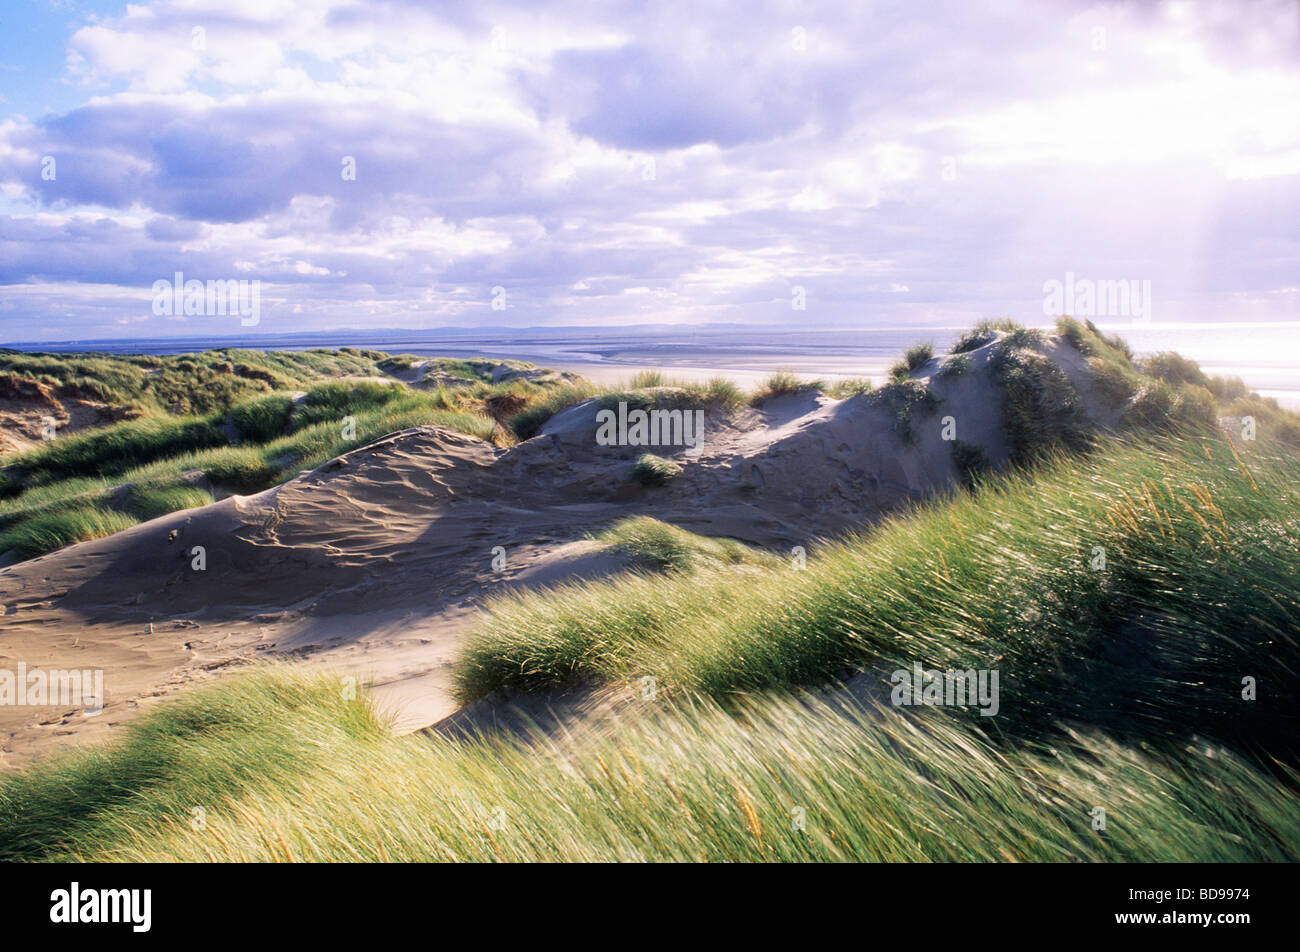 Formby Dune Lancashire inglese costa sabbiosa di sabbia paesaggi costieri Inghilterra marram spiaggia mare erba mare Foto Stock